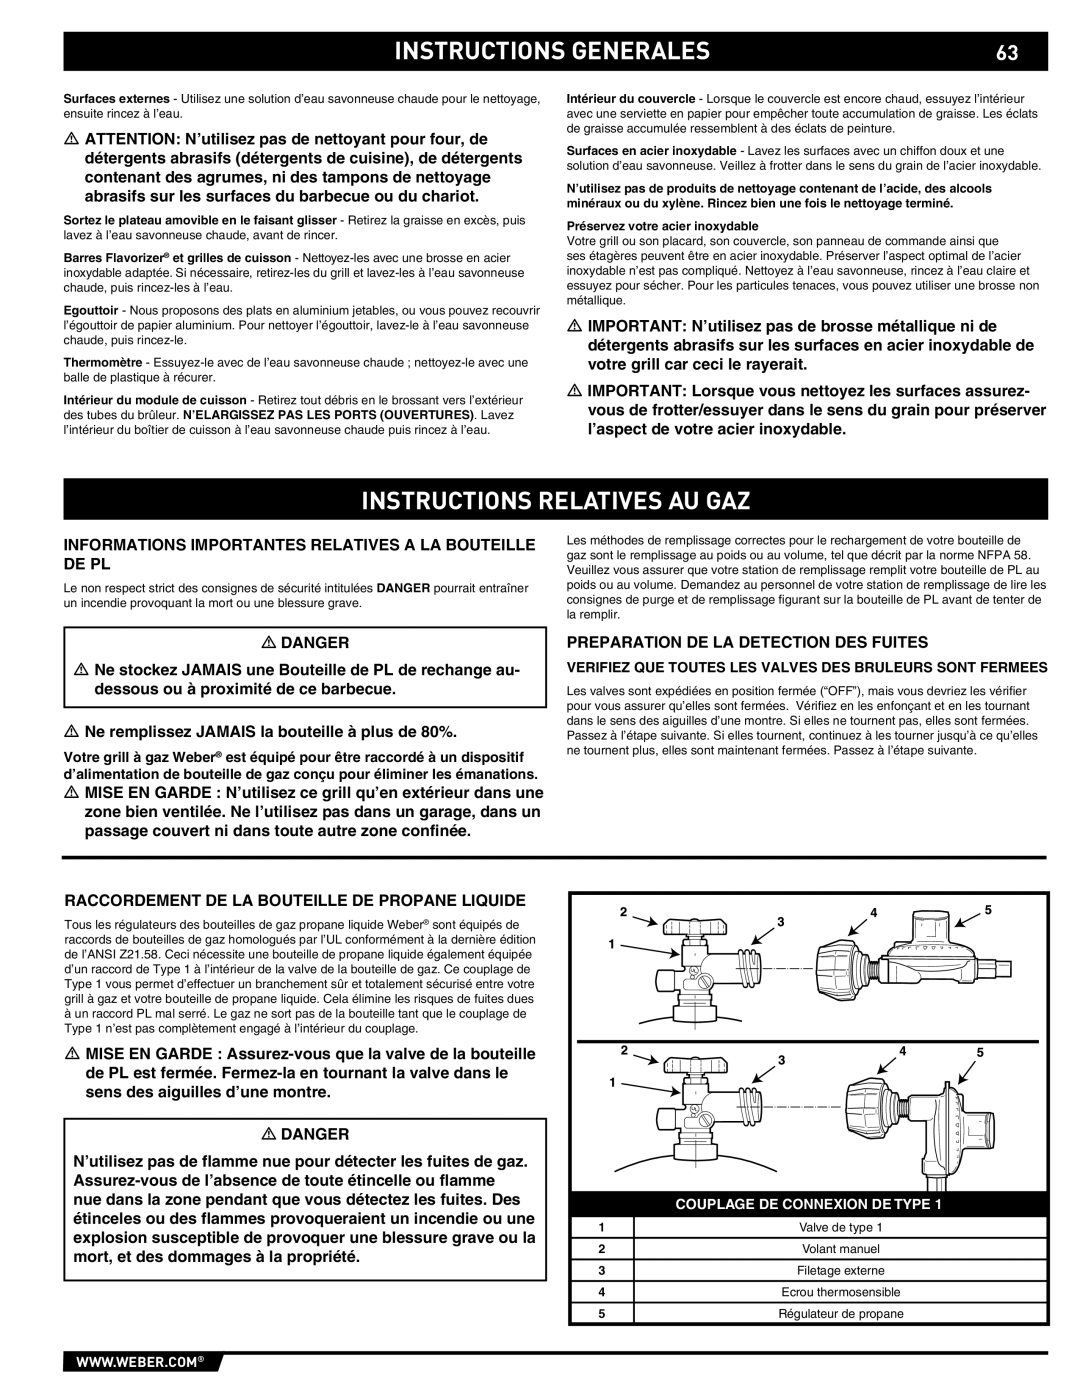 Summit 89190 manual Instructions Relatives Au Gaz, Instructions Generales, Couplage De Connexion De Type 